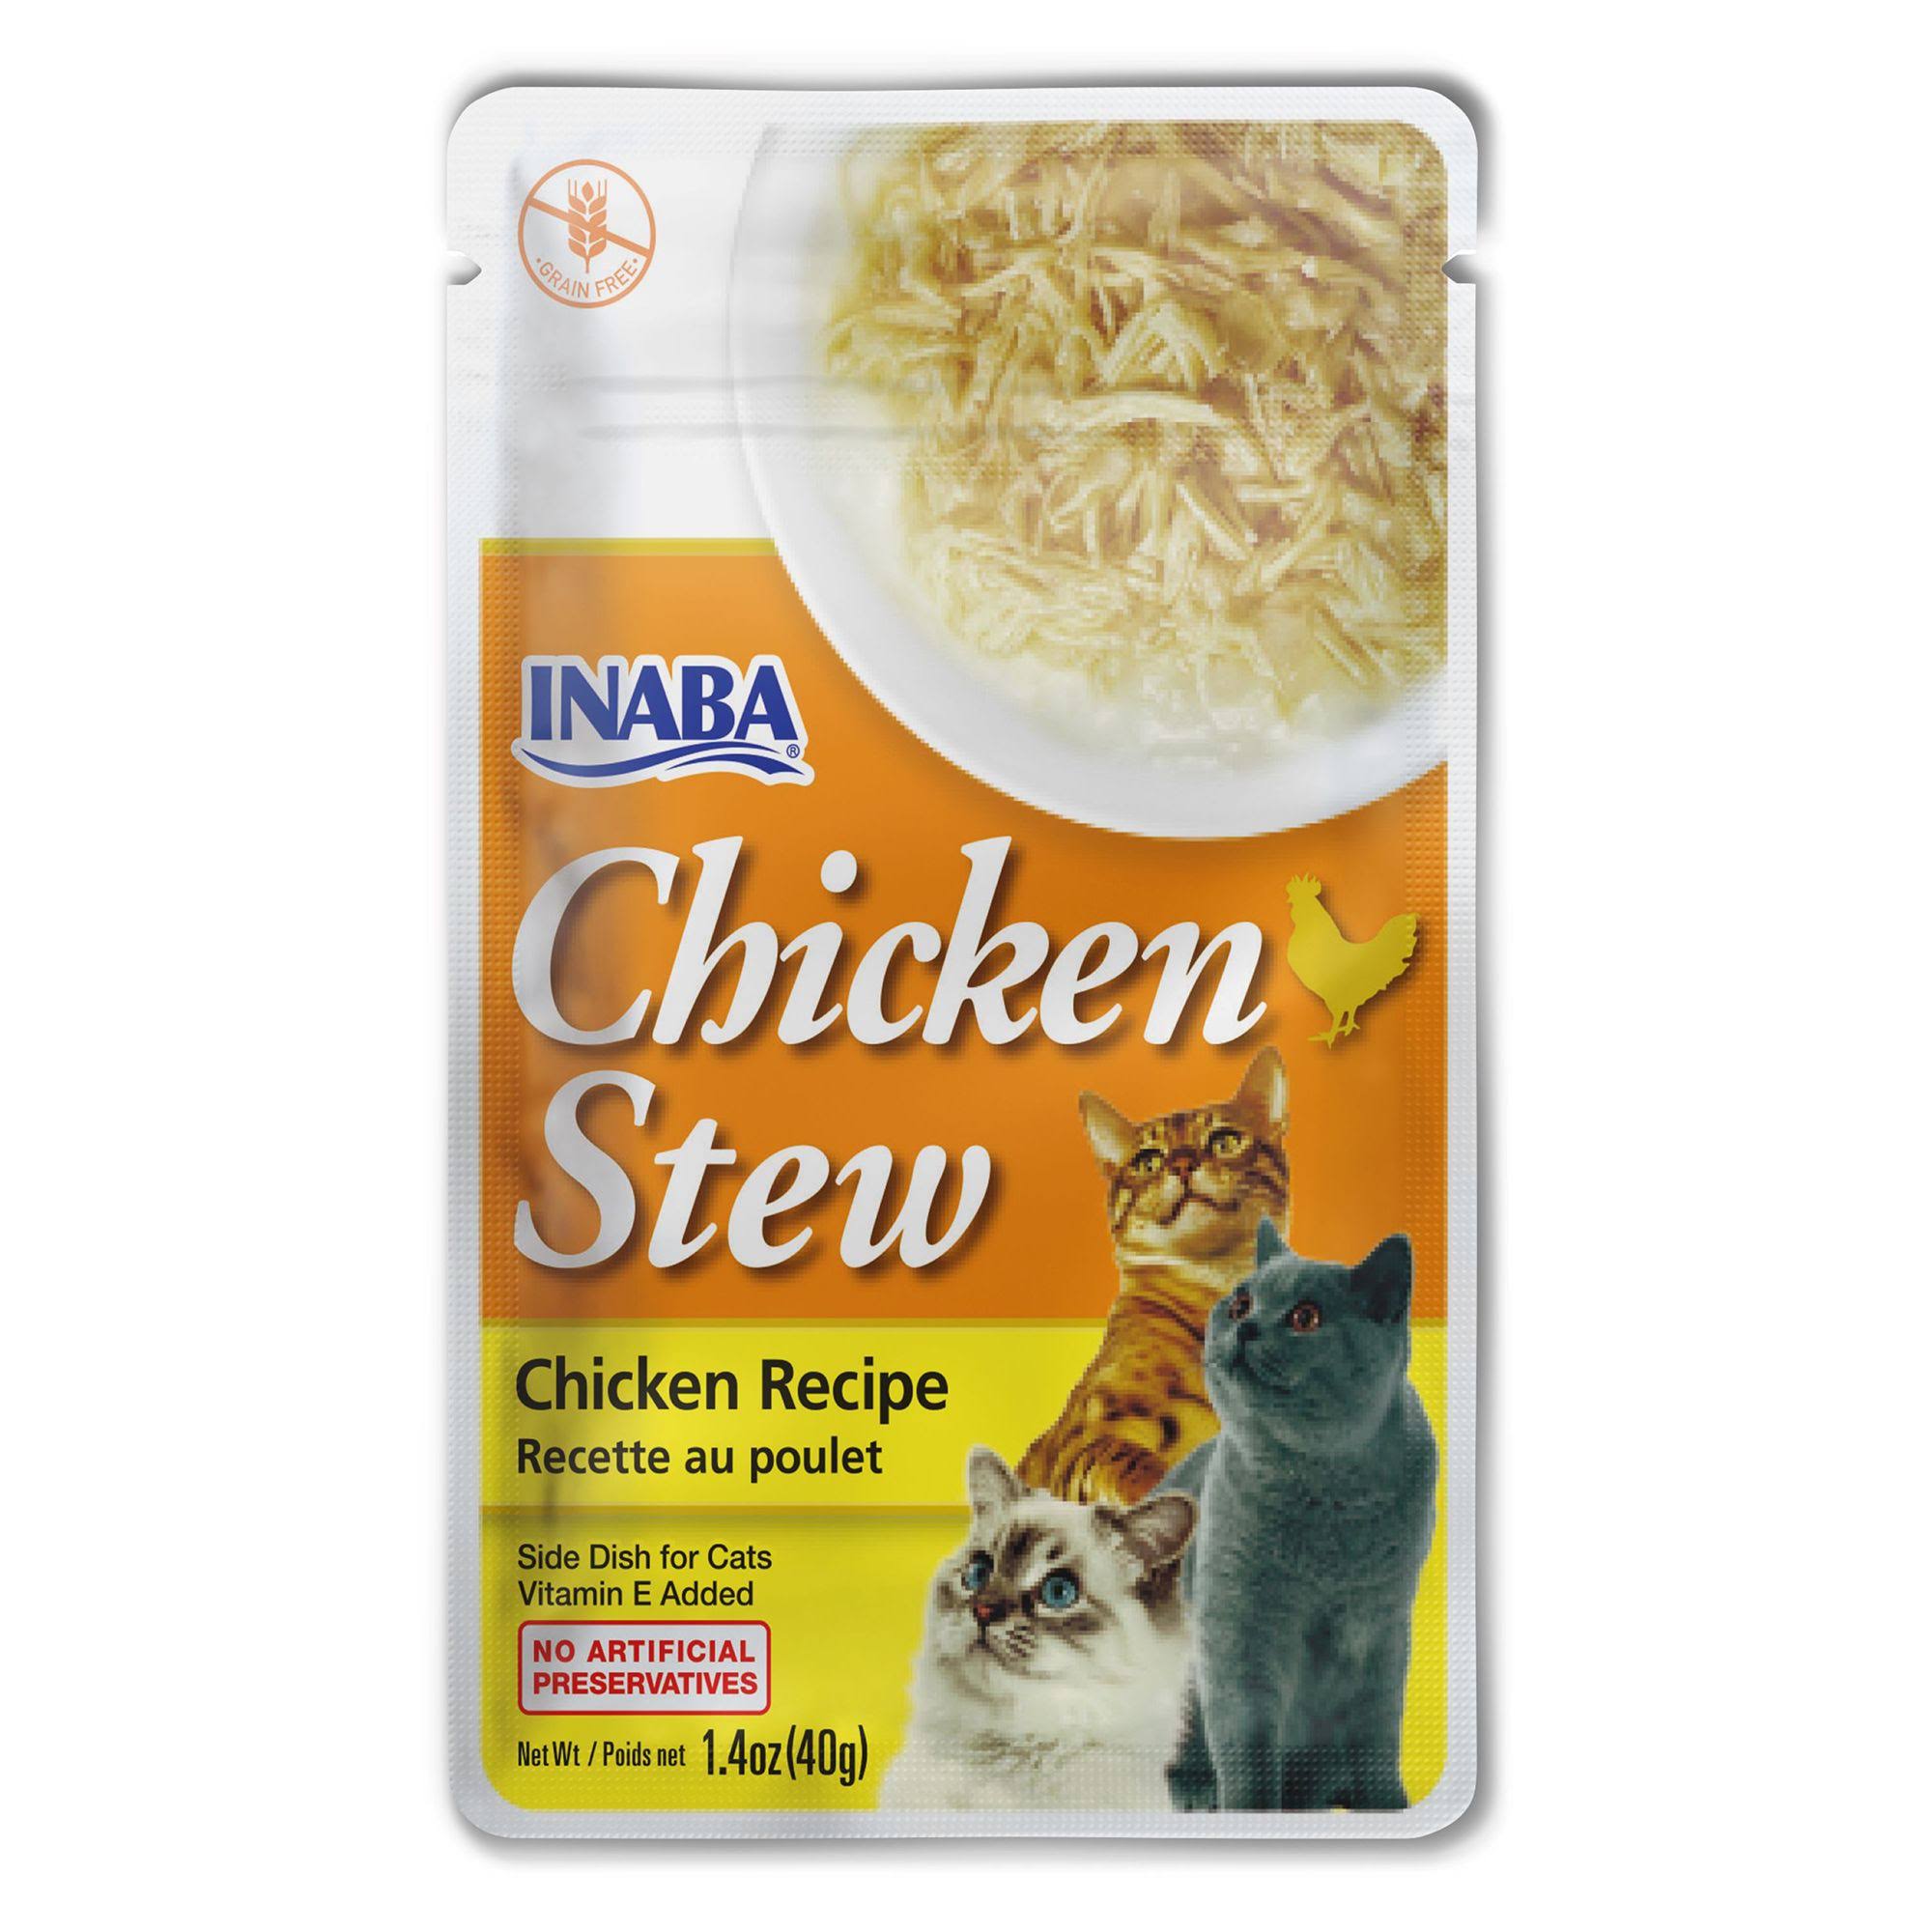 Inaba Chicken Stew Side Dish Cat Treat - Chicken Recipe